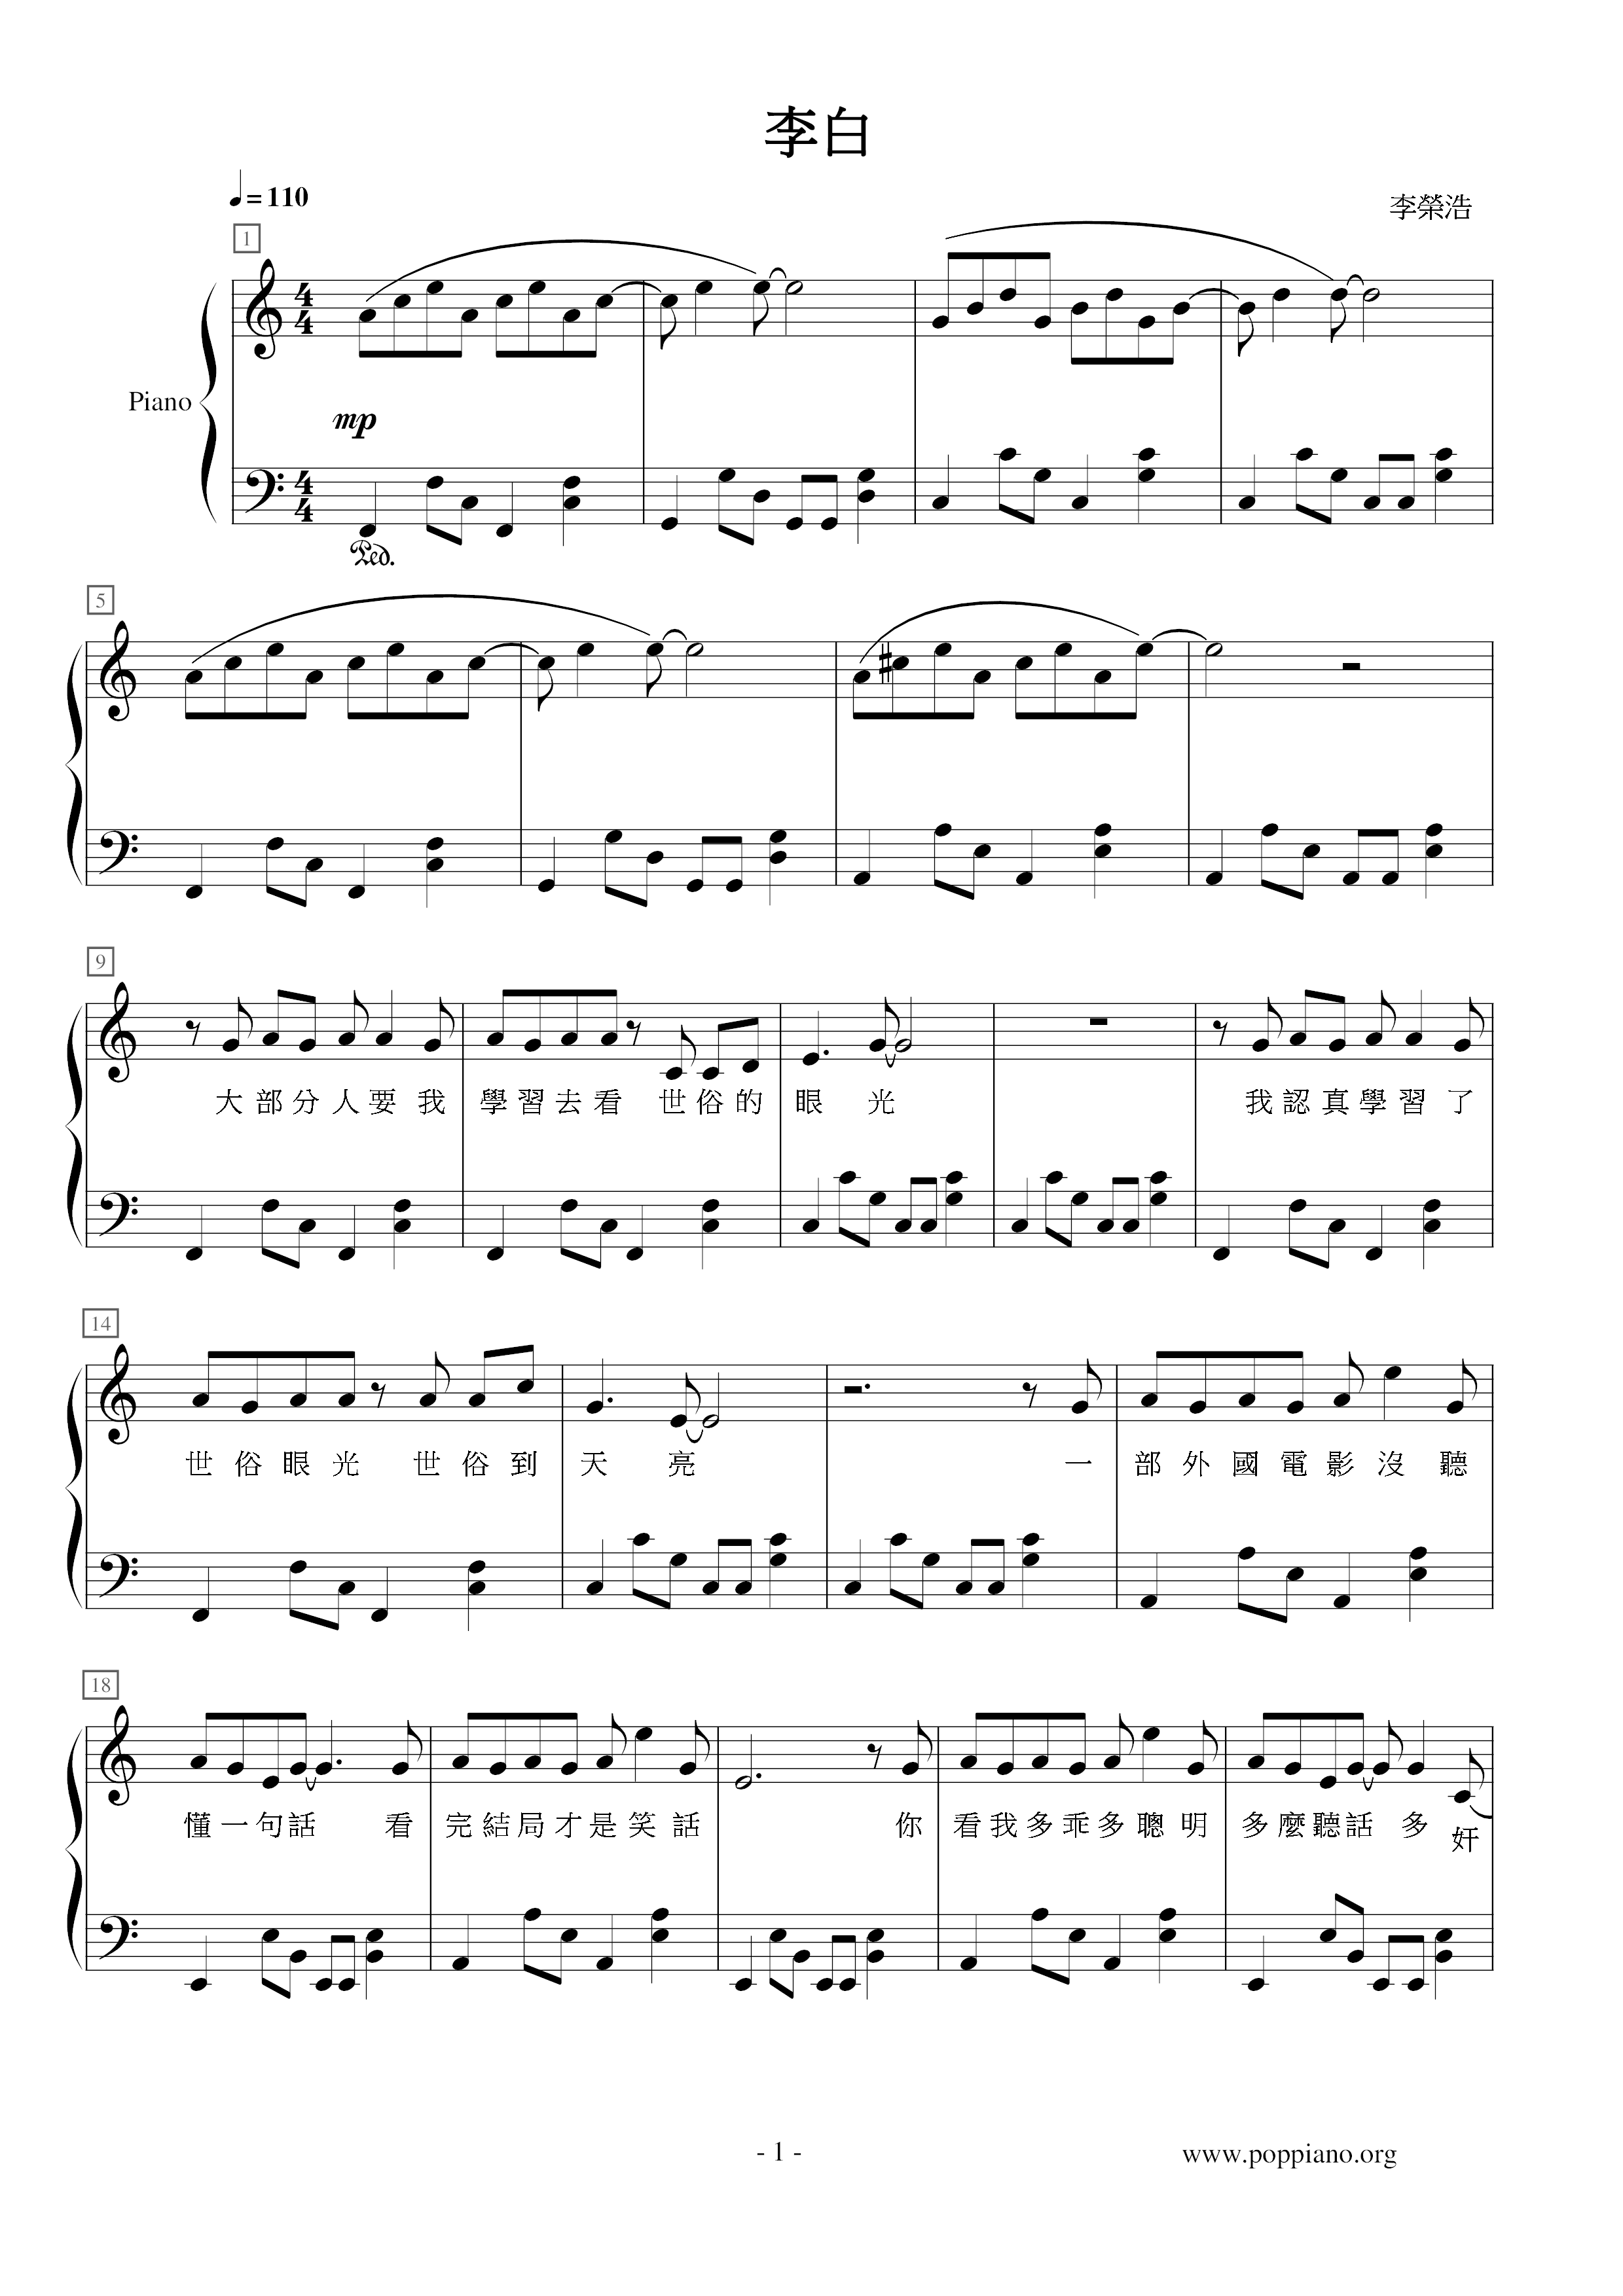 Li Bai Score